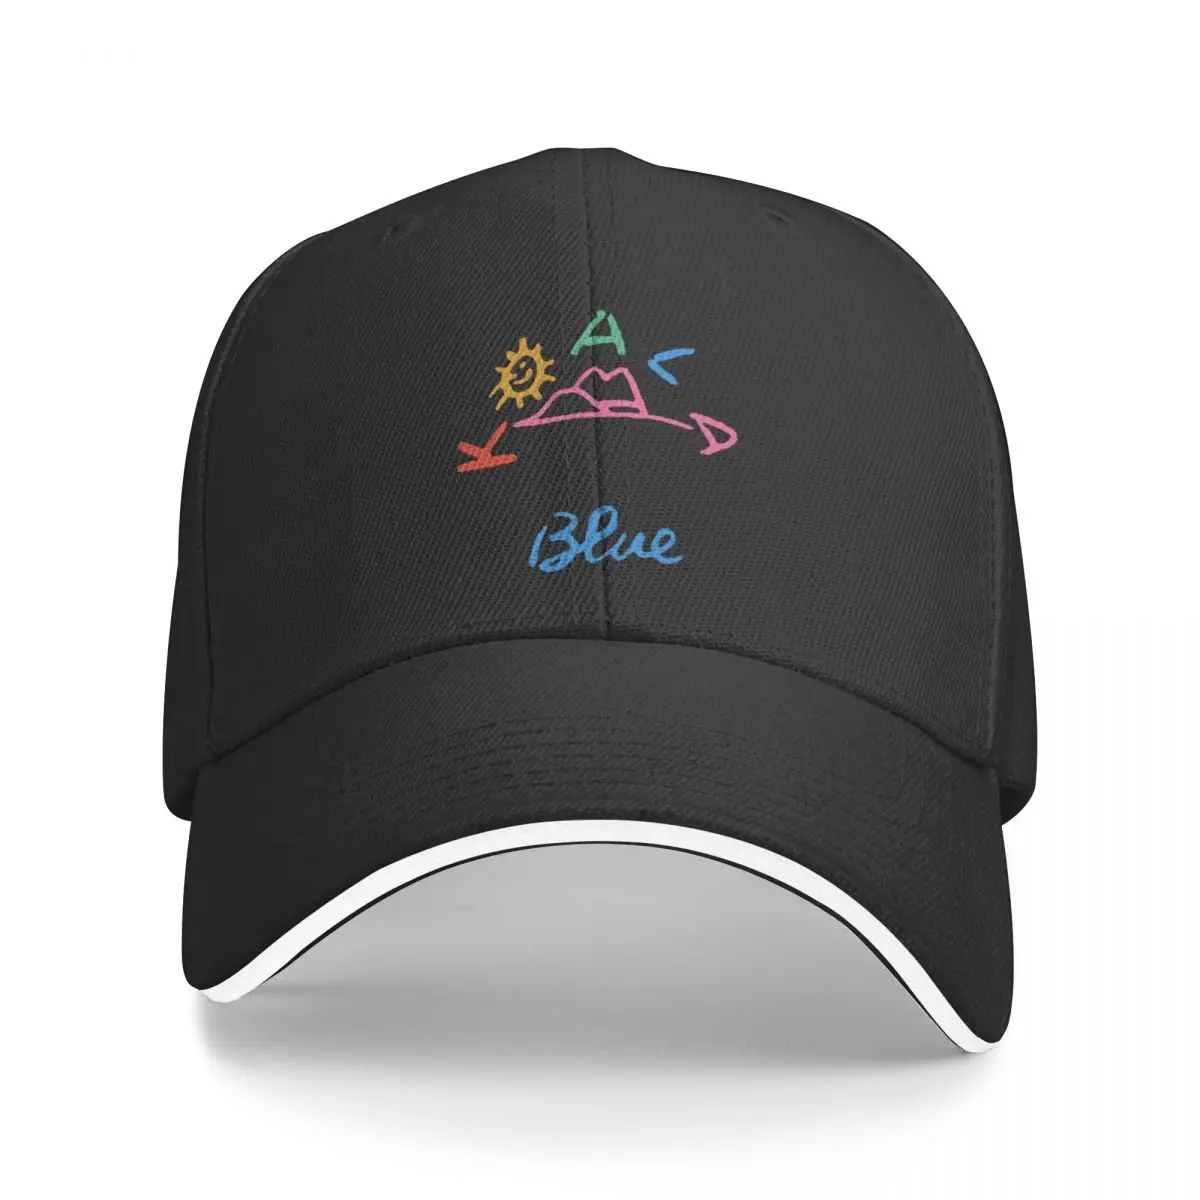 Yeni Fan Koala Mavi beyzbol şapkası Marka Erkek Kapaklar Lüks Erkek Şapka güneş şapkası Dağcılık Şapka Erkekler Kadınlar İçin